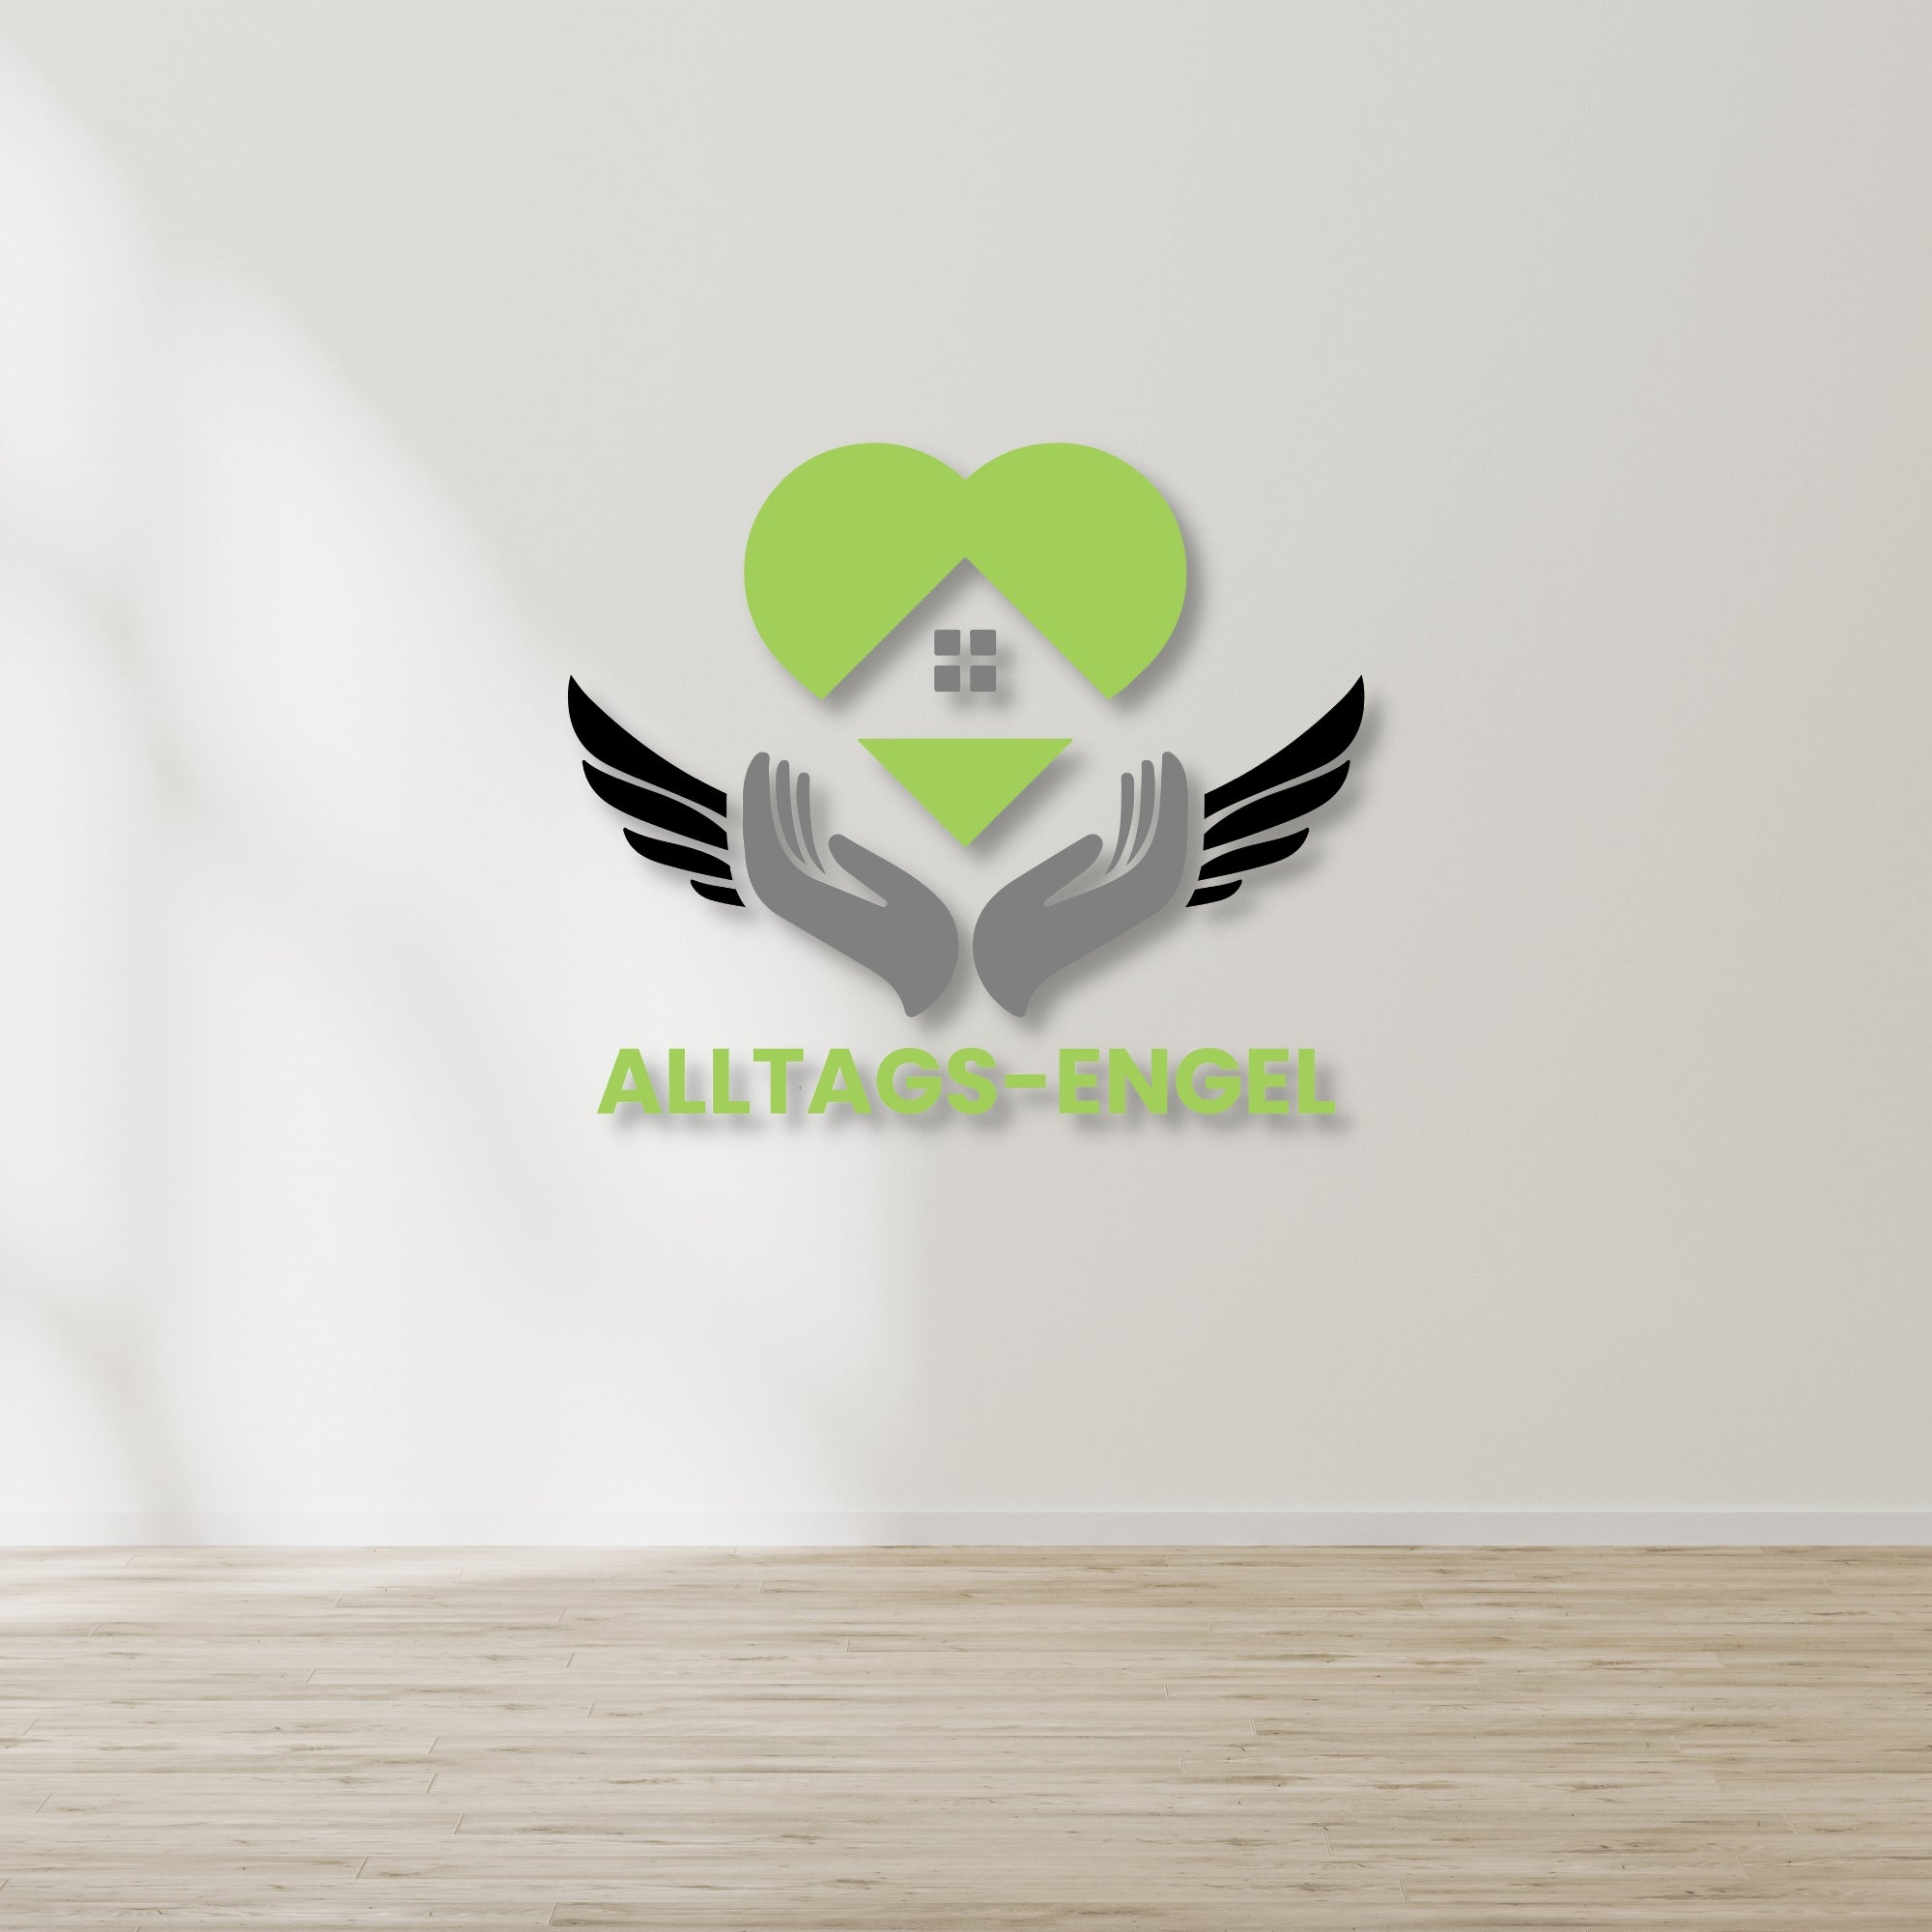 Individuelles 3D-Logo für dein Unternehmen 'Alltags-Engel'